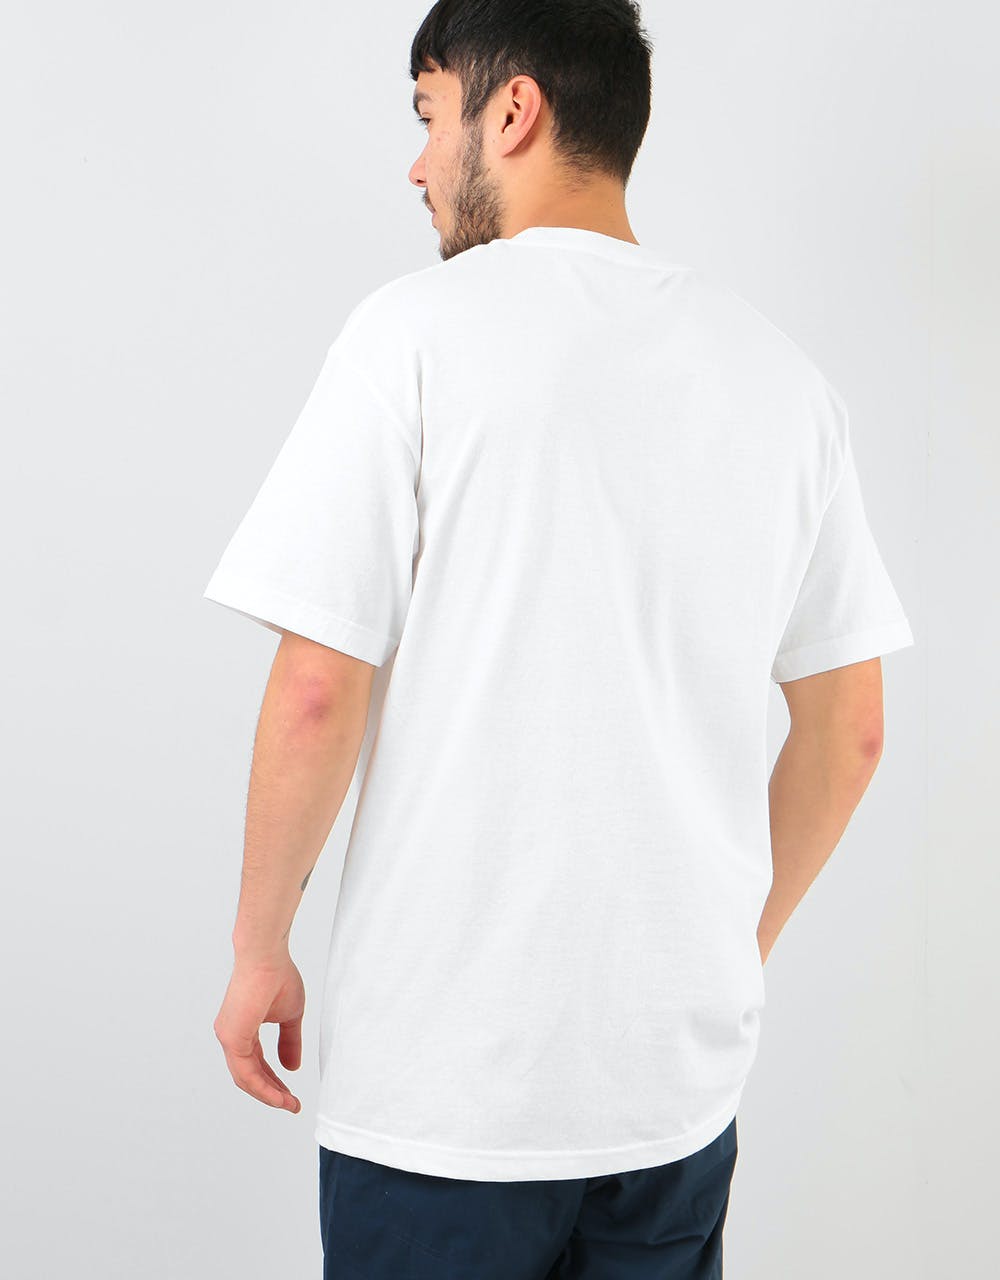 Lovenskate 'Skate Attack' T-Shirt - White